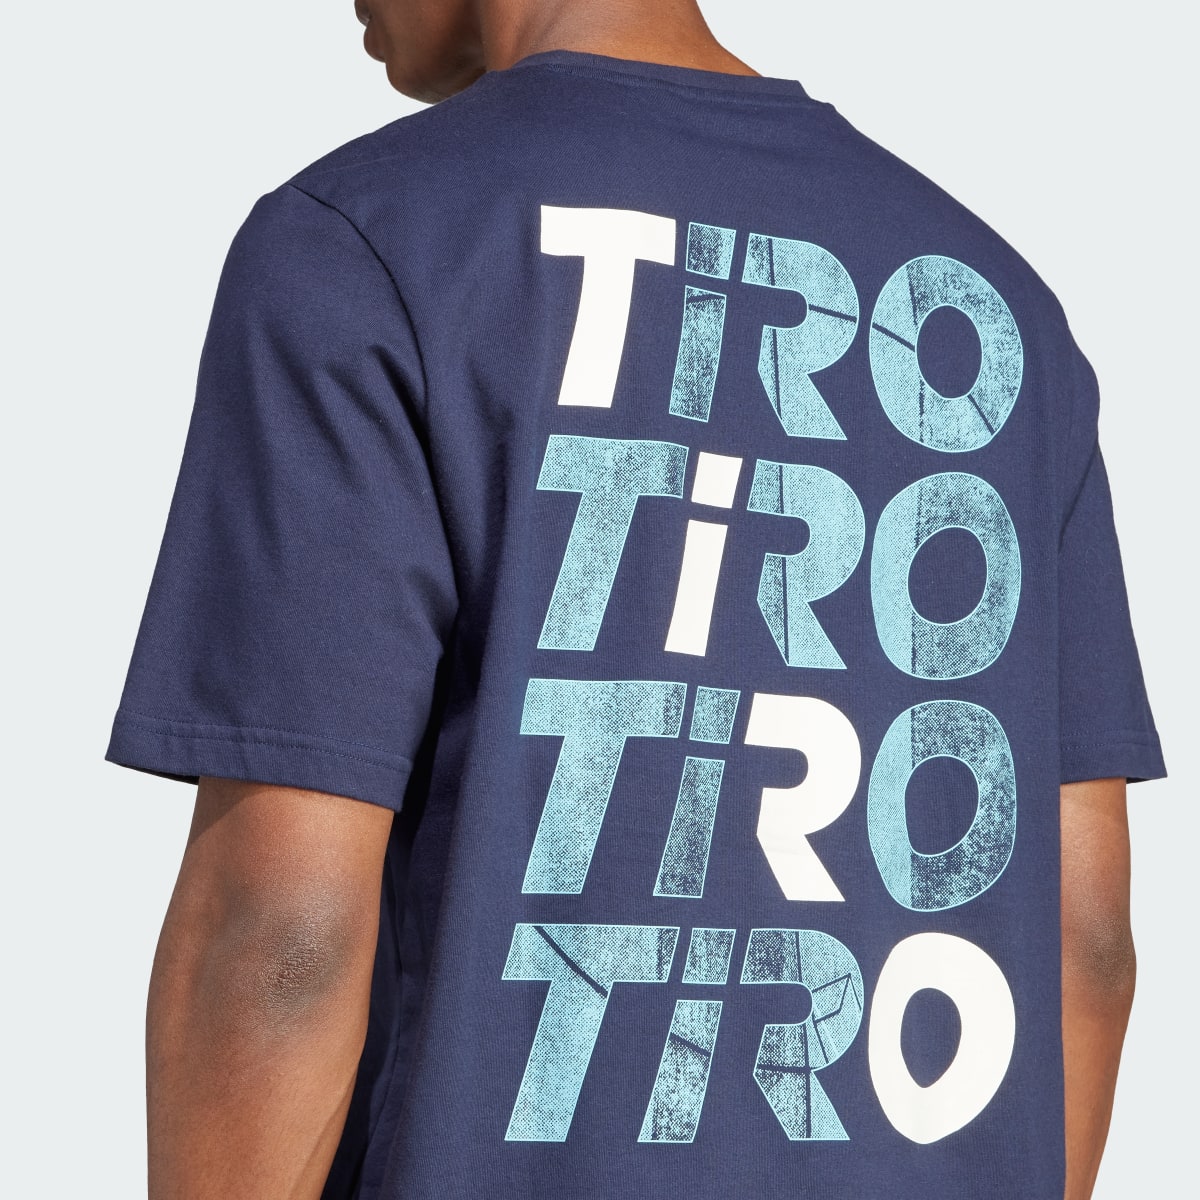 Adidas Tiro Wordmark Graphic T-Shirt. 8